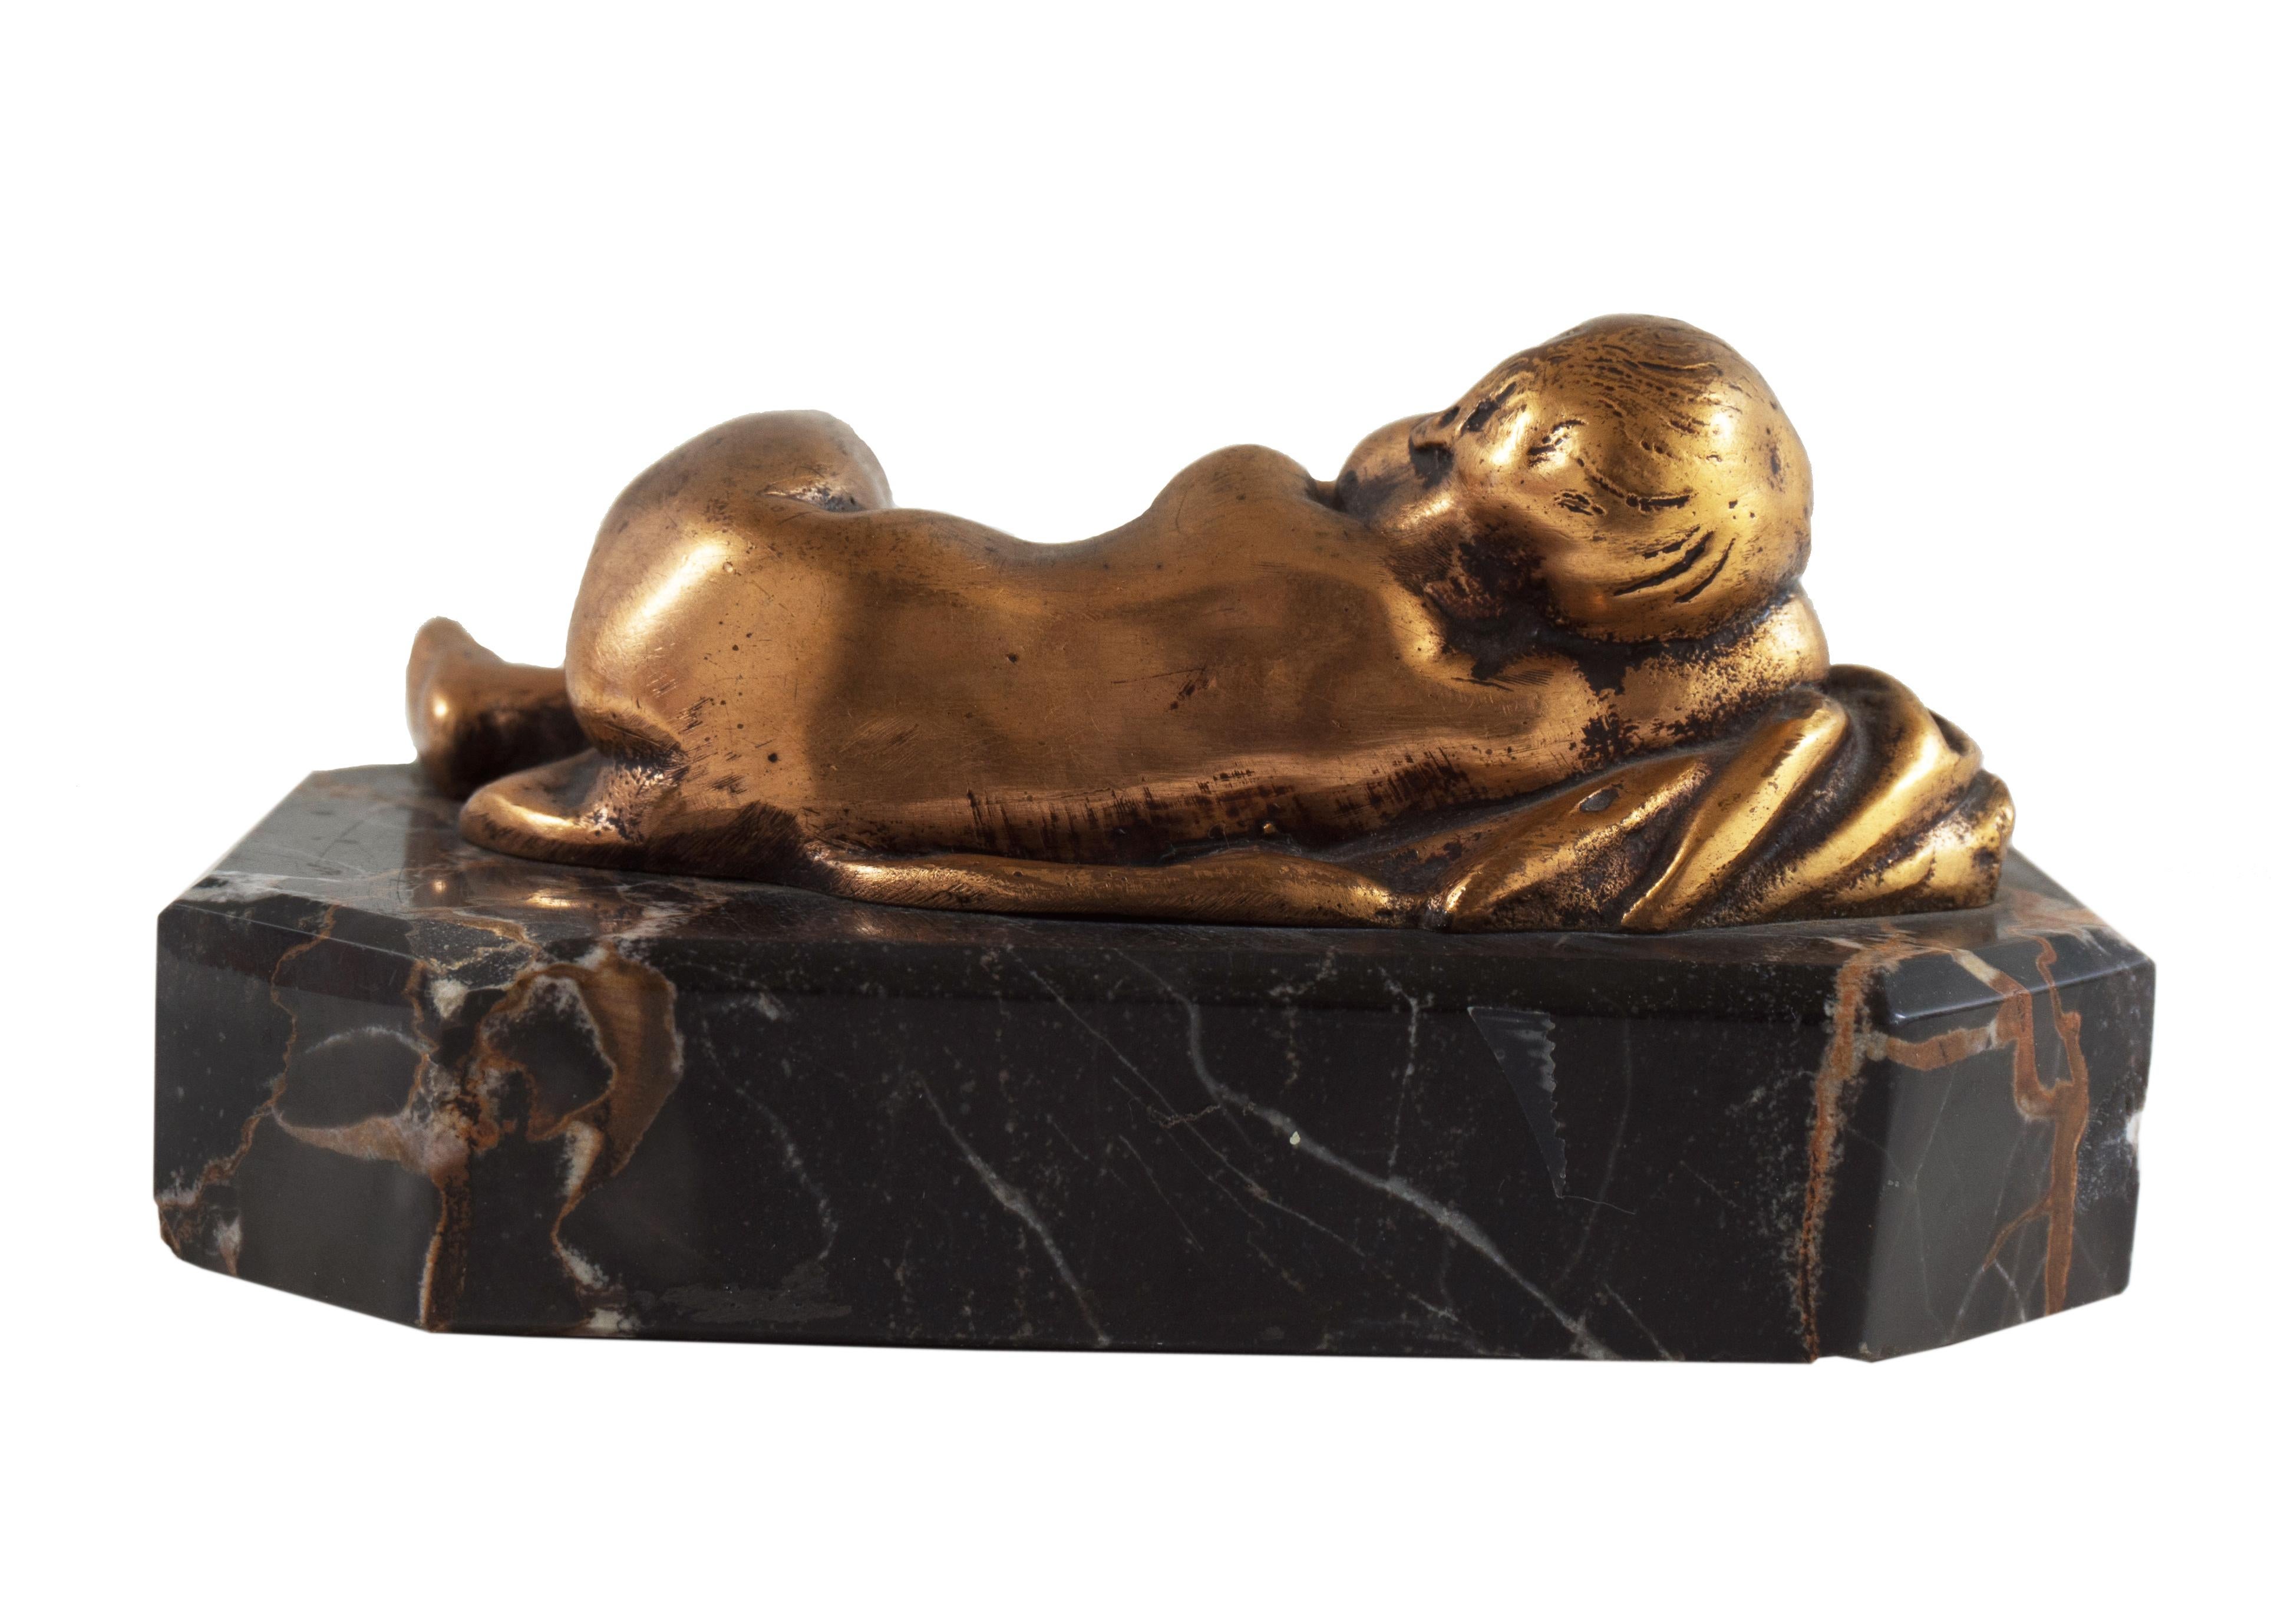  Kleine Beaux-Arts-Skulptur „Sleeping Cherub“ aus vergoldeter Bronze auf Portoro-Marmorsockel (Realismus), Sculpture, von Unknown